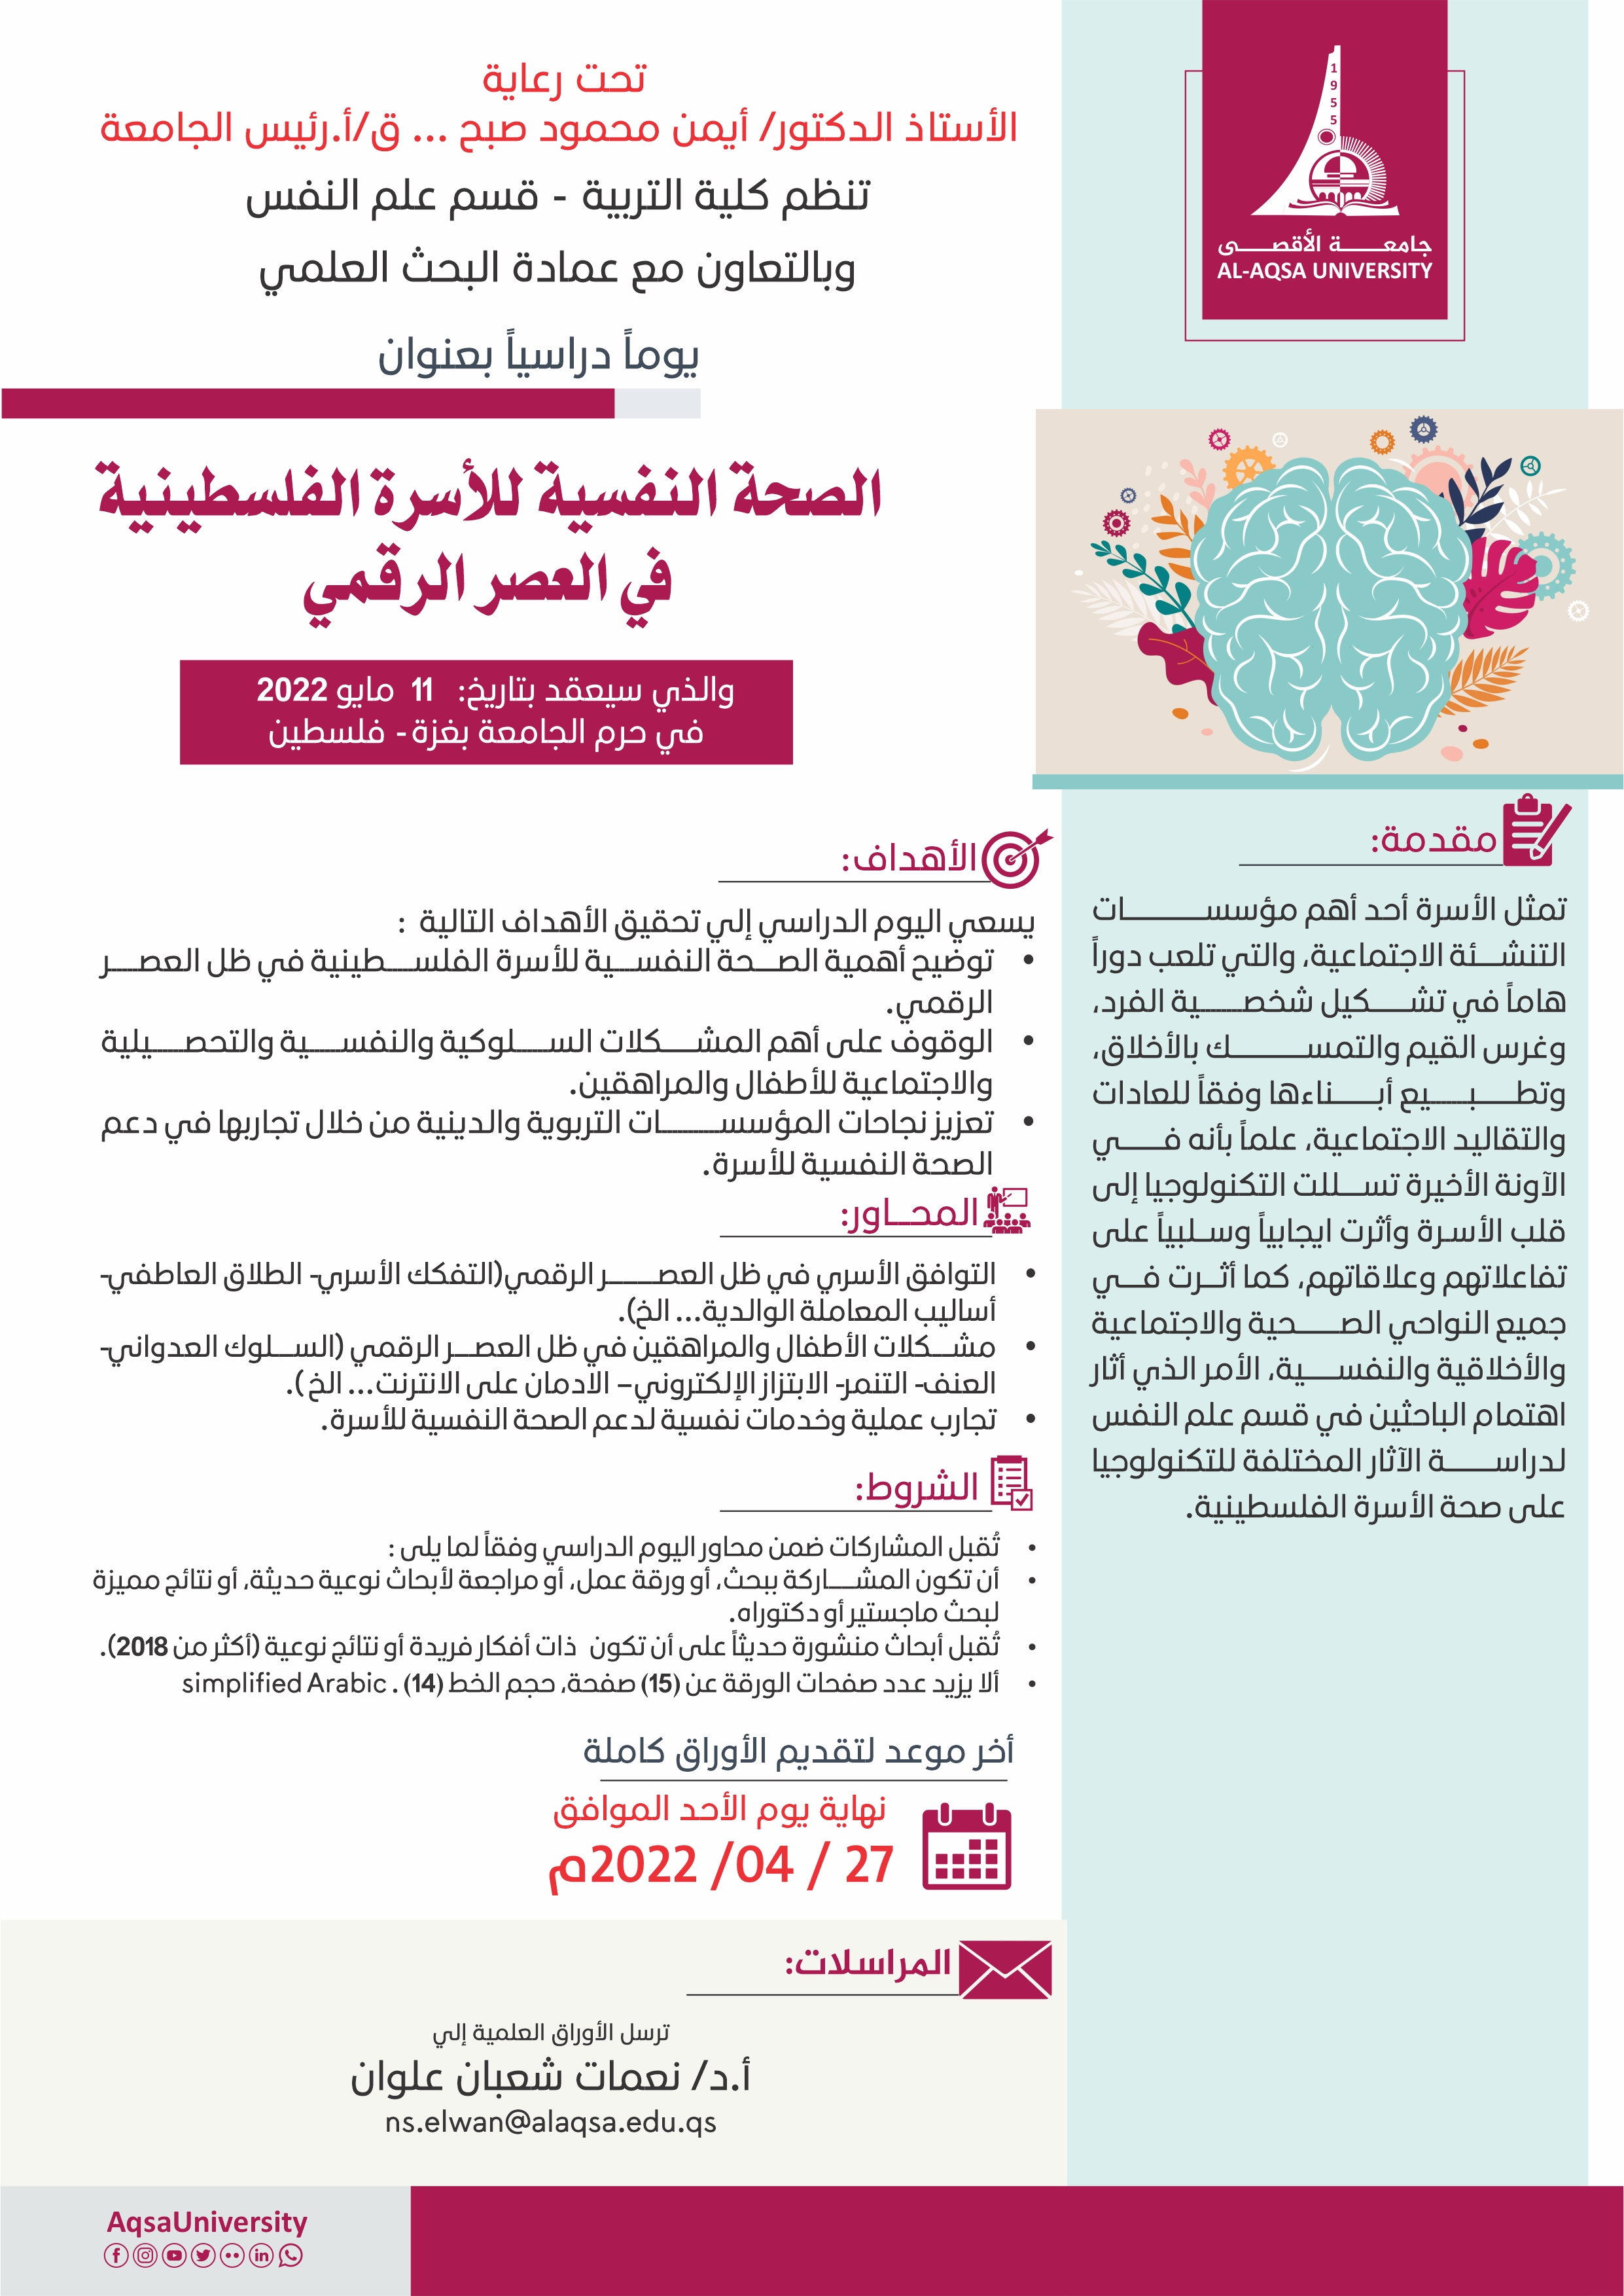 دعوة للمشاركة في اليوم الدراسي بعنوان الصحة النفسية للأسرة الفلسطينية في العصر الرقمي